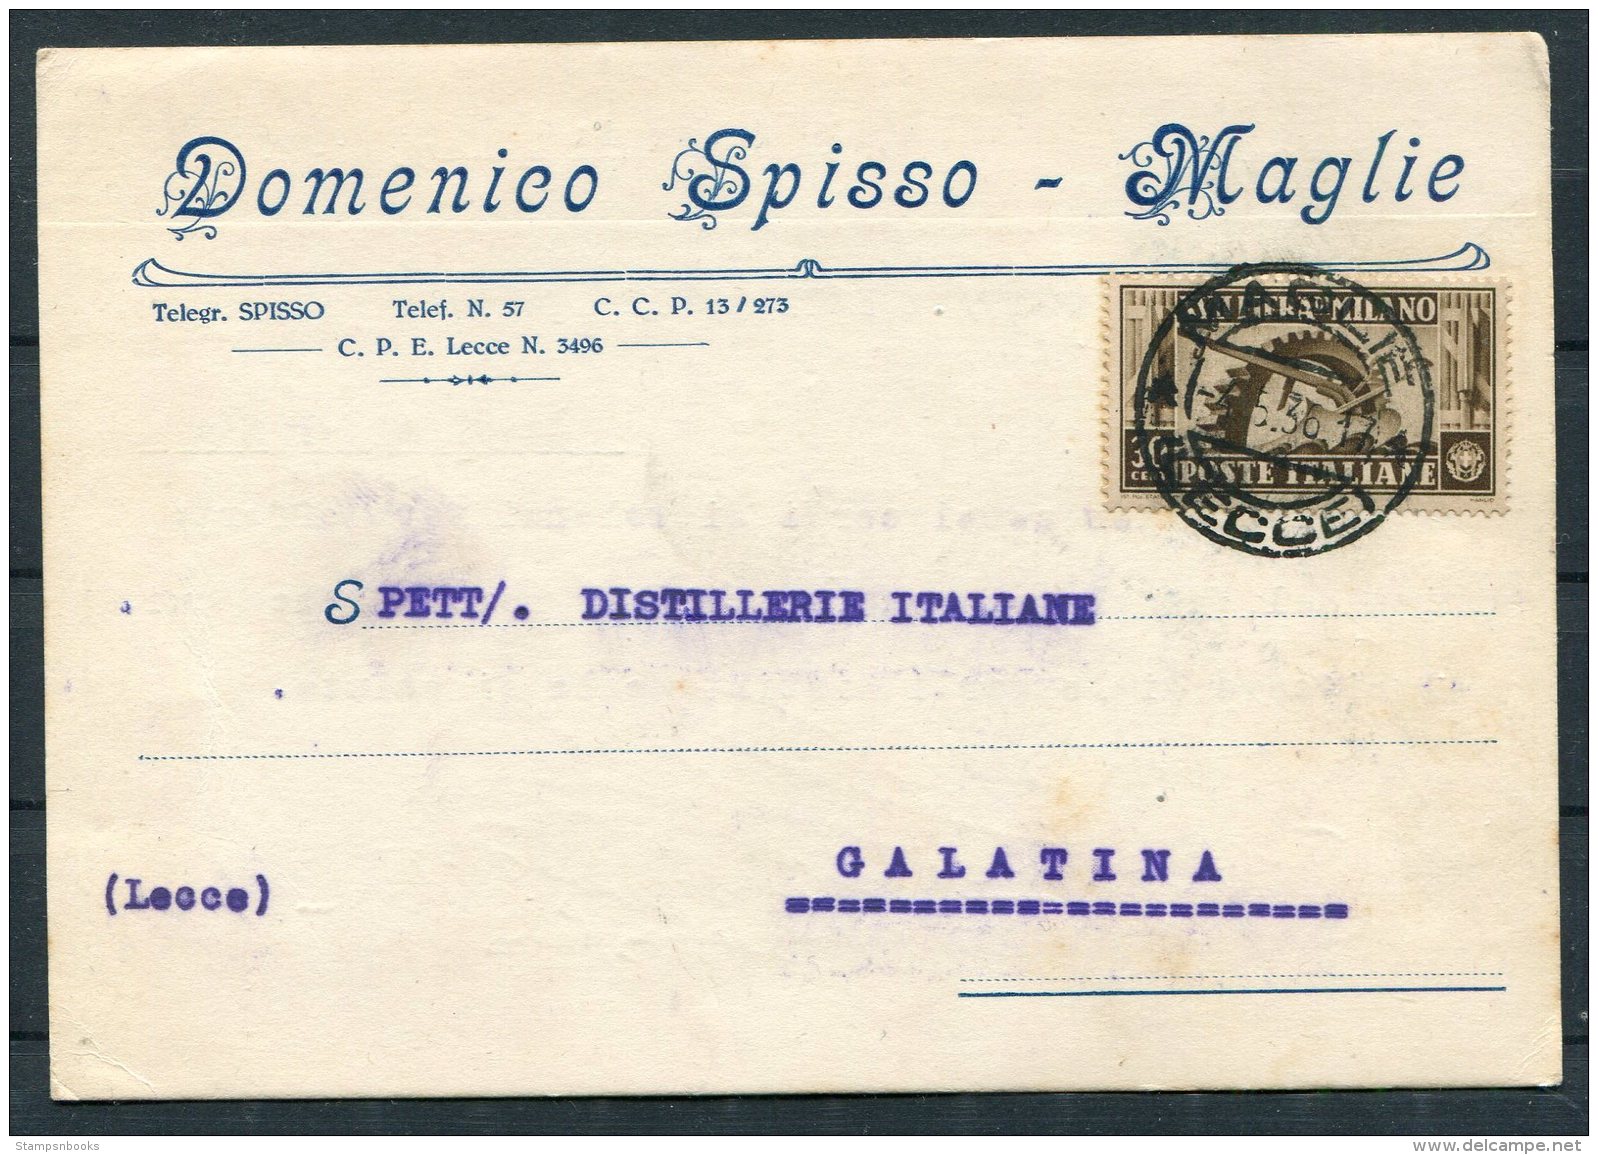 1936 Italy Domenico Spisso, Maglie Postcard - Italiane Distillerie, Galatana Lecce - Marcophilia